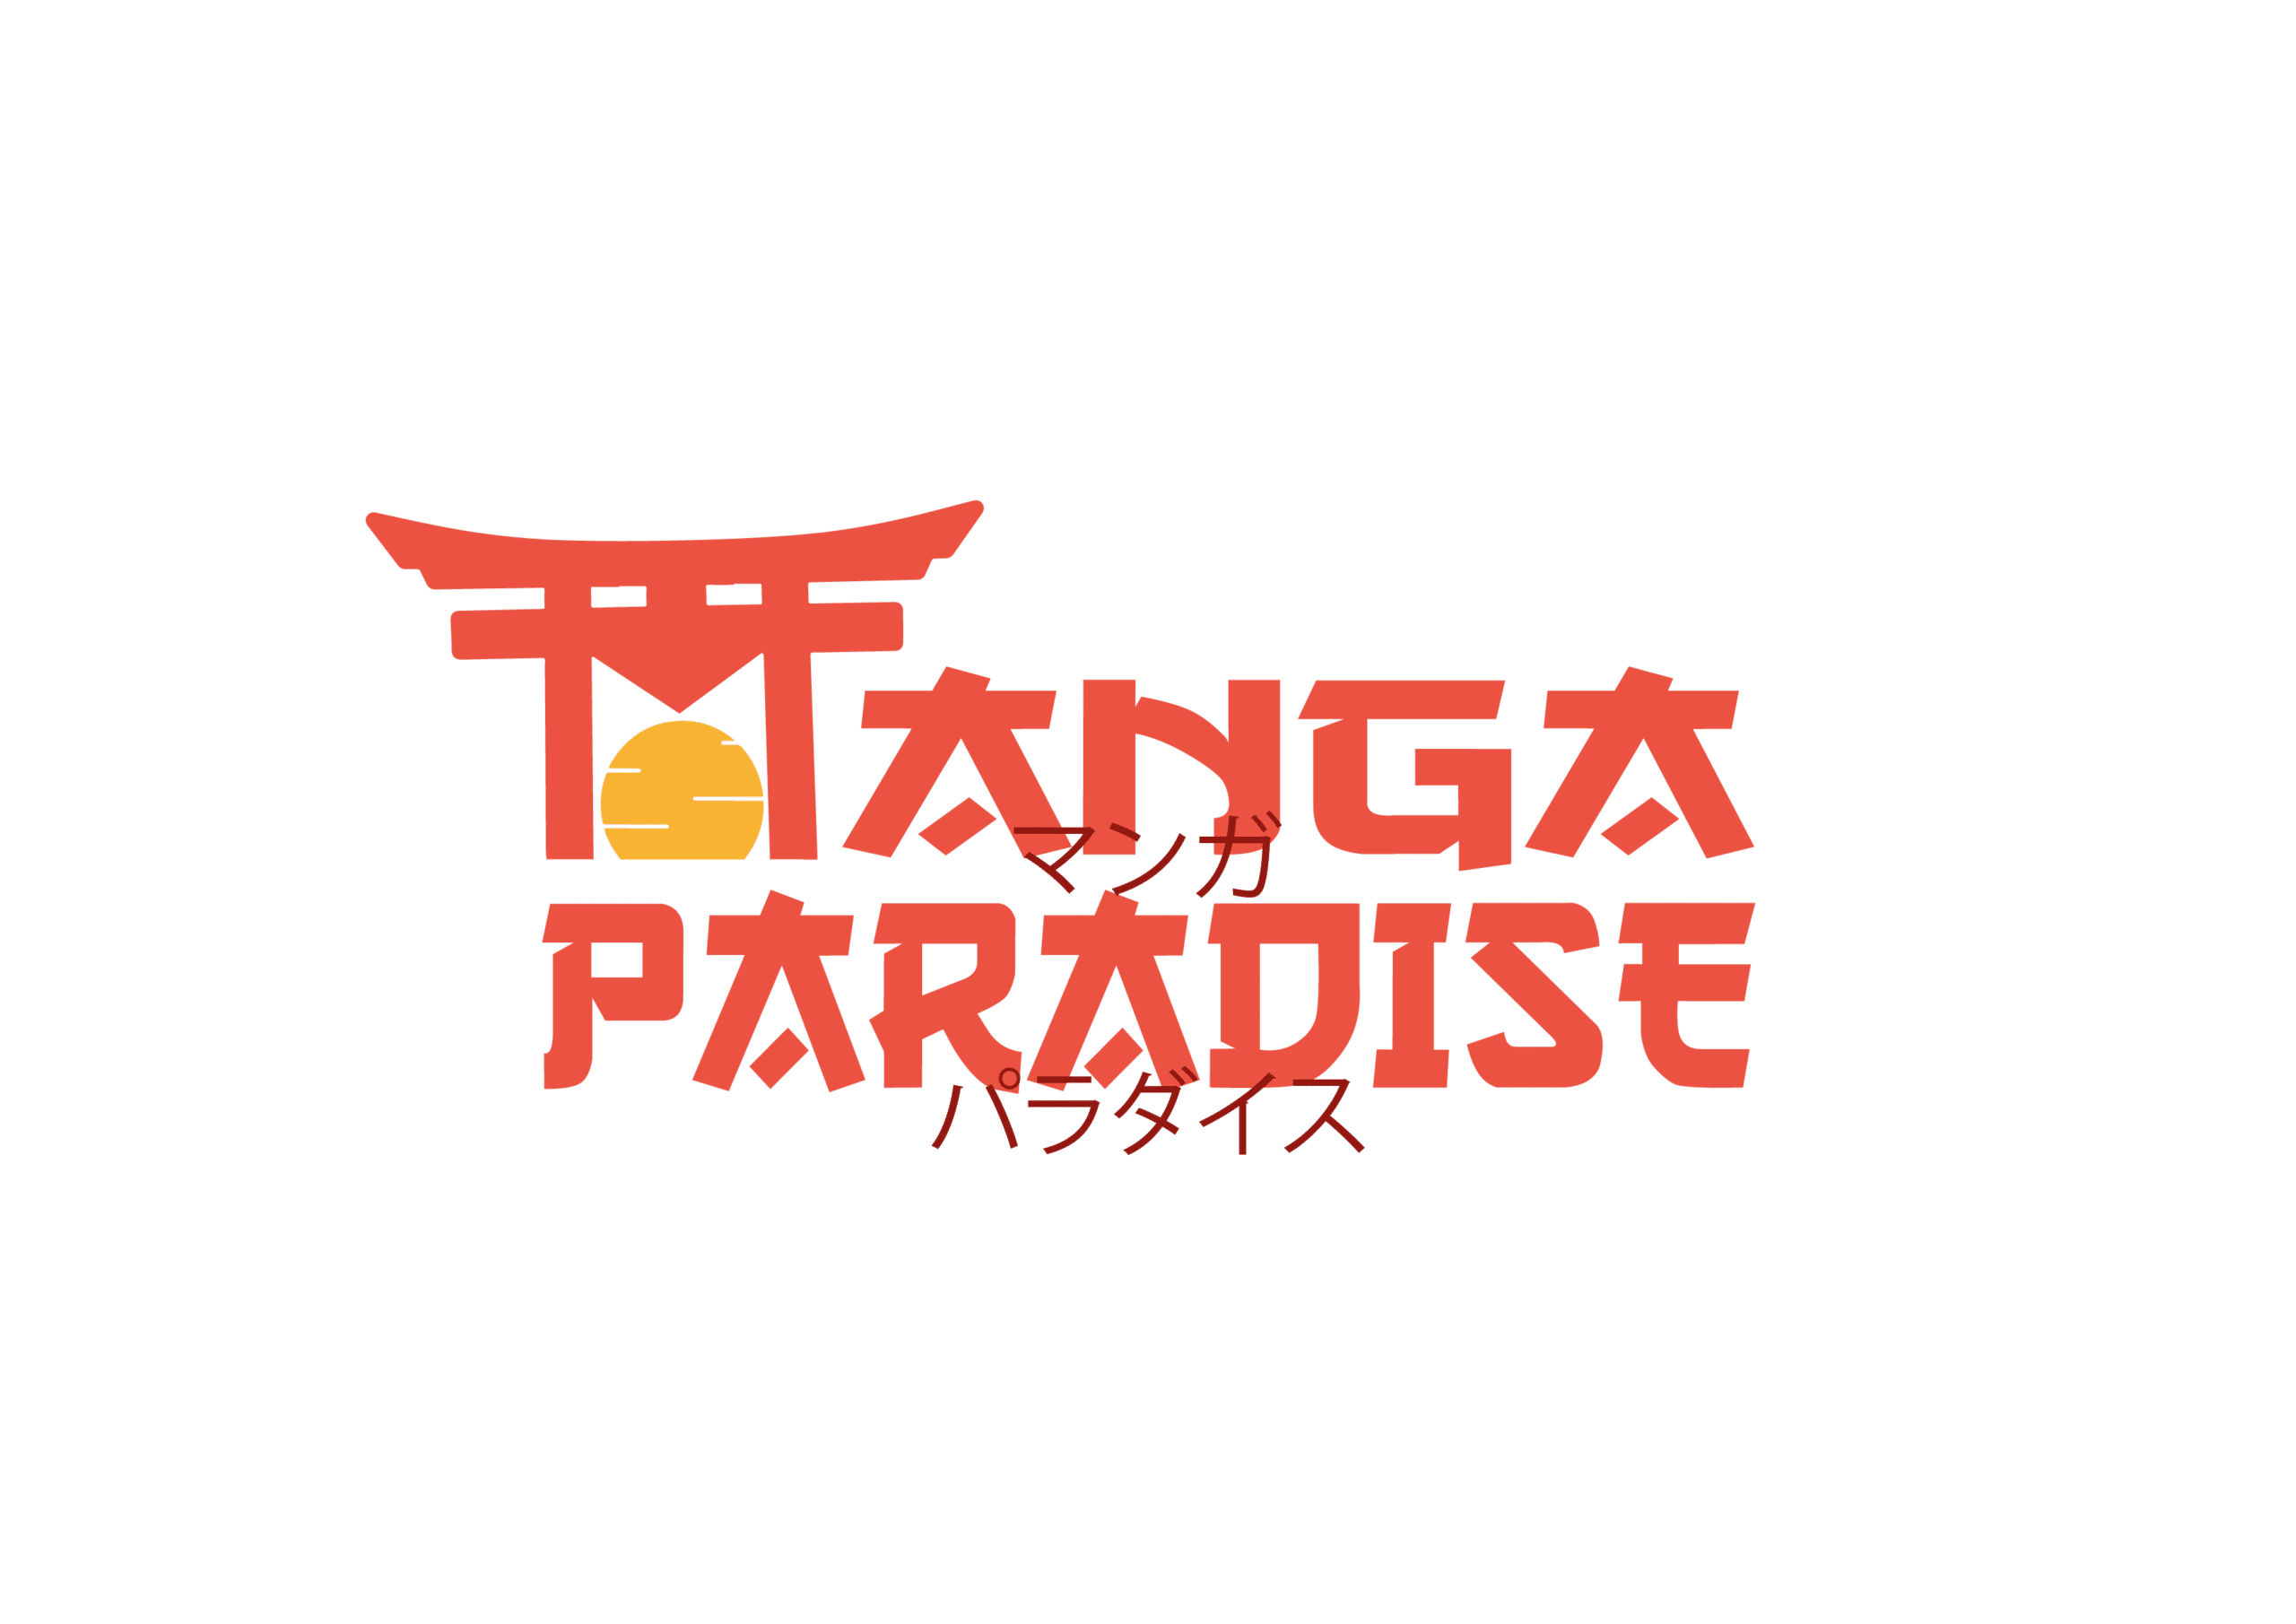 Logo Manga Paradise